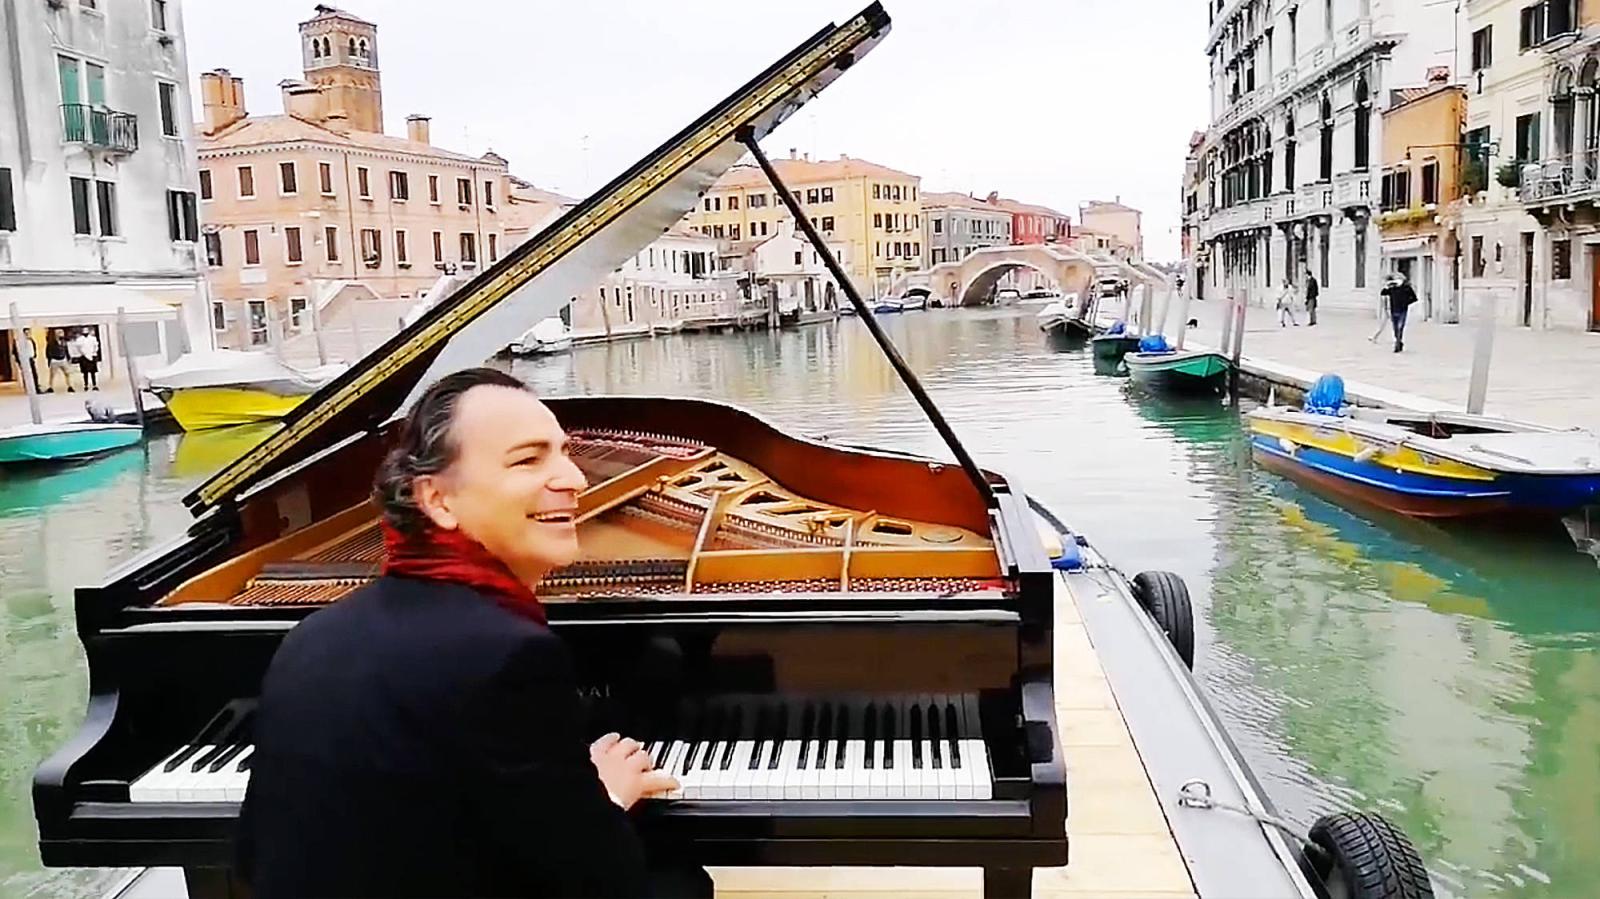 Buổi biểu diễn dương cầm trên kênh Venice của nghệ sĩ người Ý